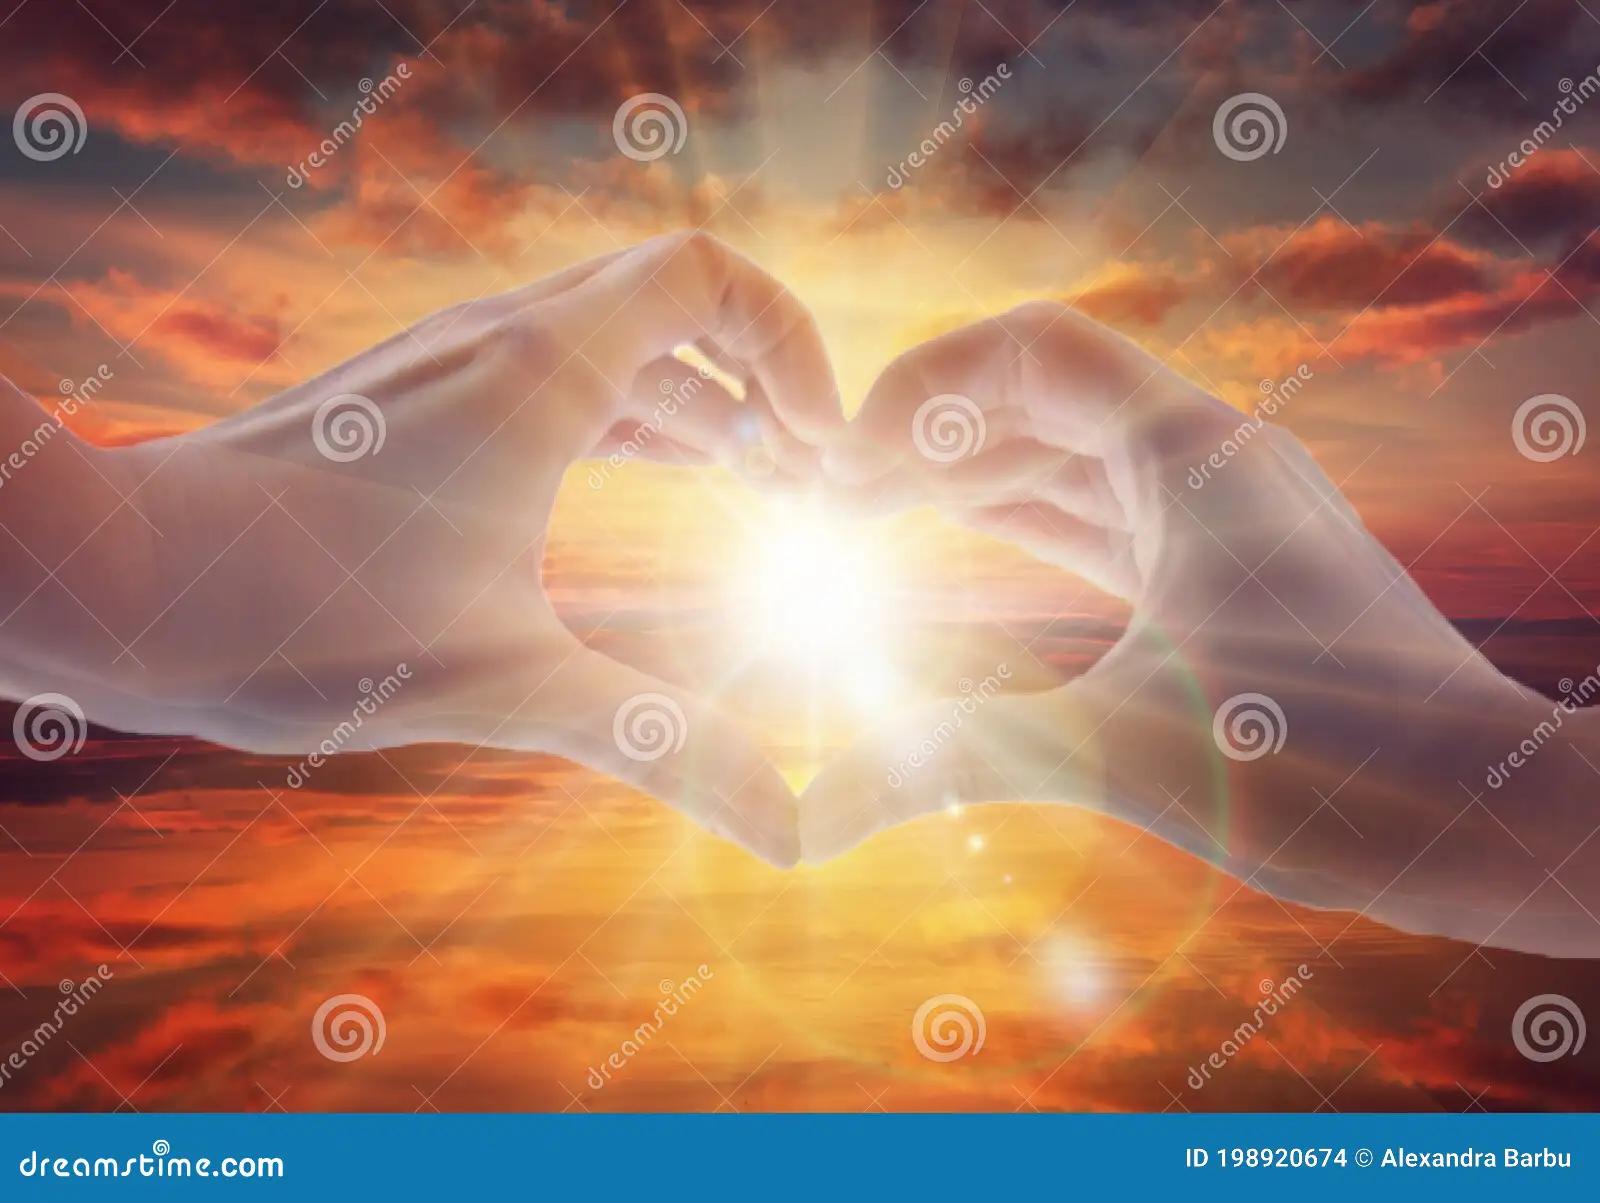 amor sol energia - Cuál es la energía que mueve el mundo